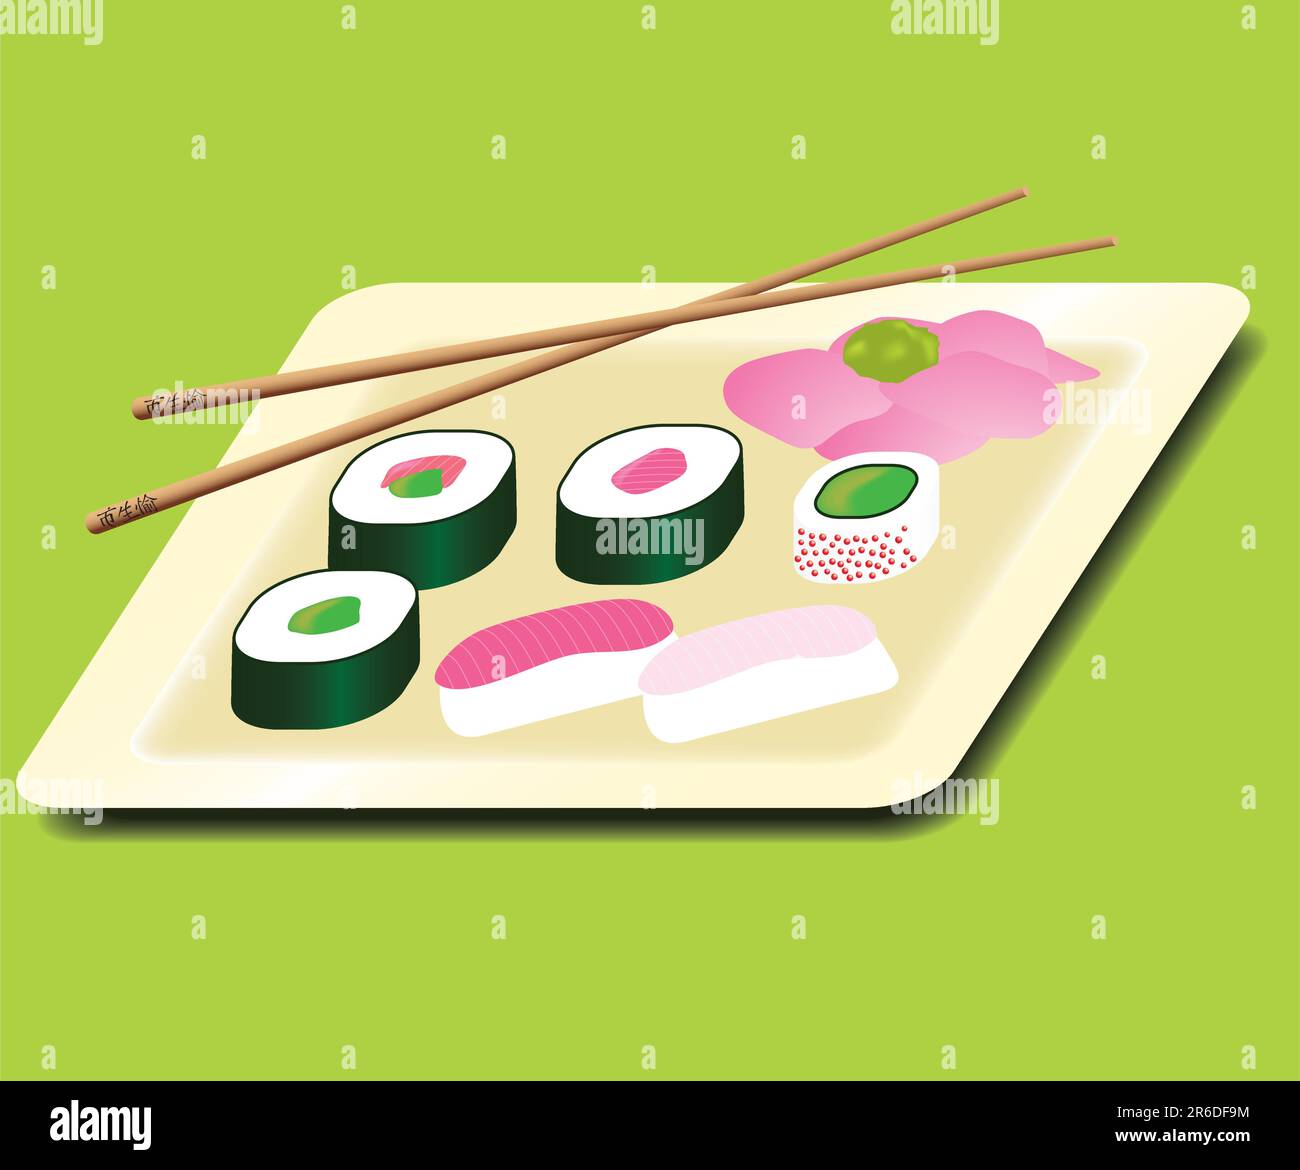 Une variété de sushis sur une assiette avec un bâton de choeur et du gingembre Illustration de Vecteur